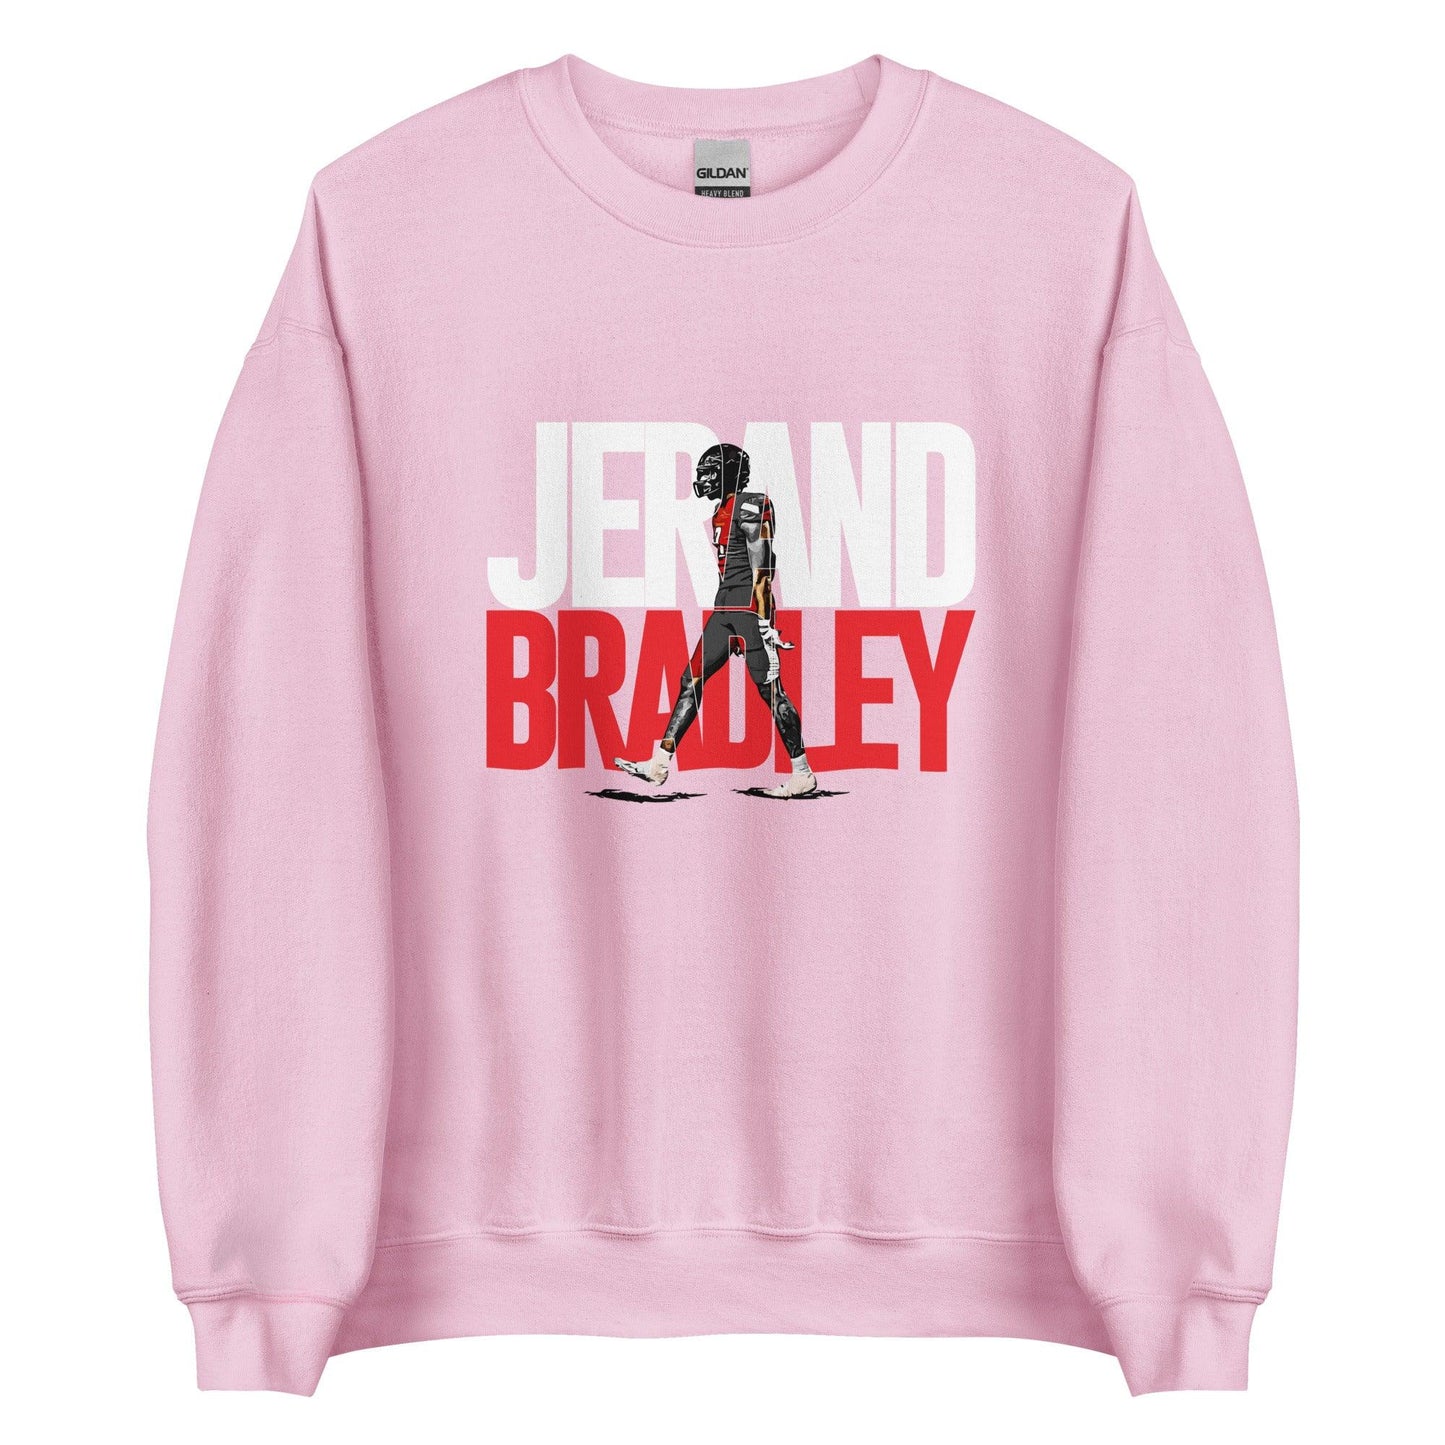 Jerand Bradley "Gameday" Sweatshirt - Fan Arch